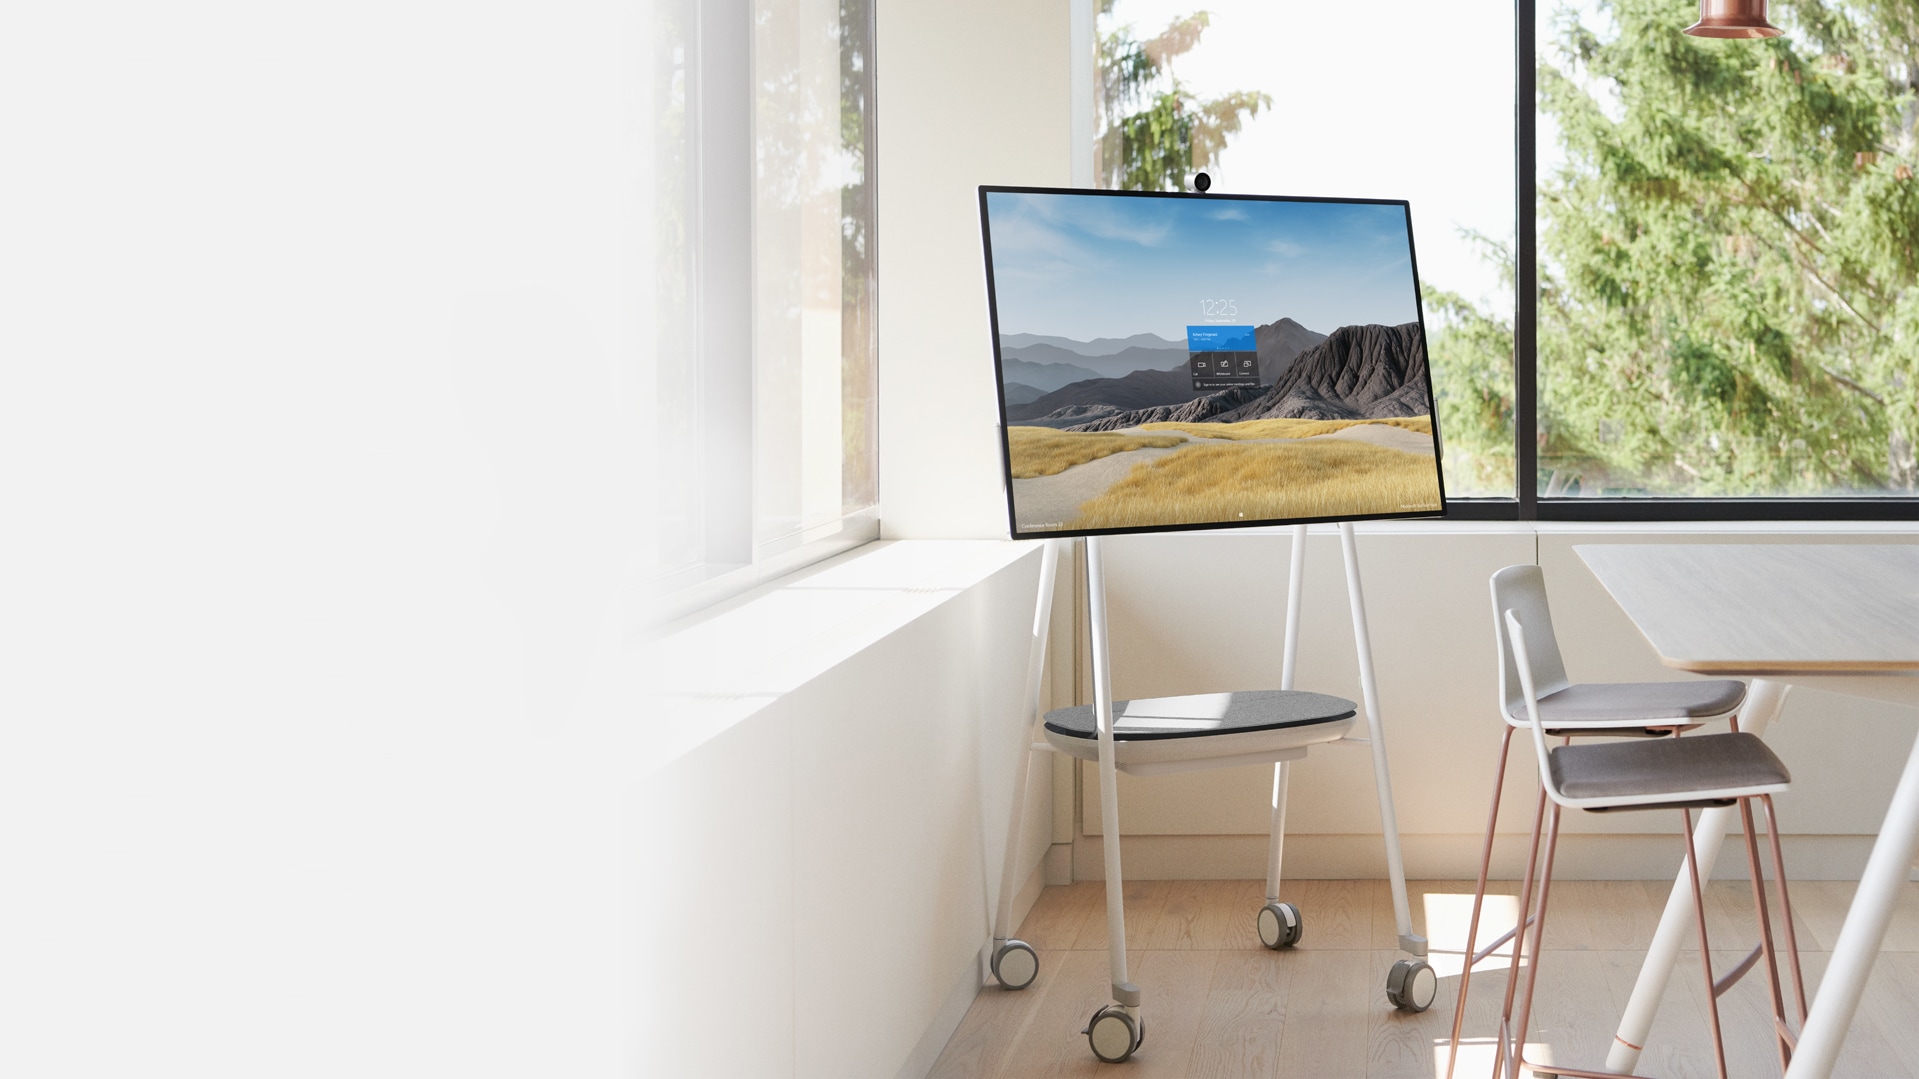 50 hüvelykes Surface Hub 2S irodai környezetben